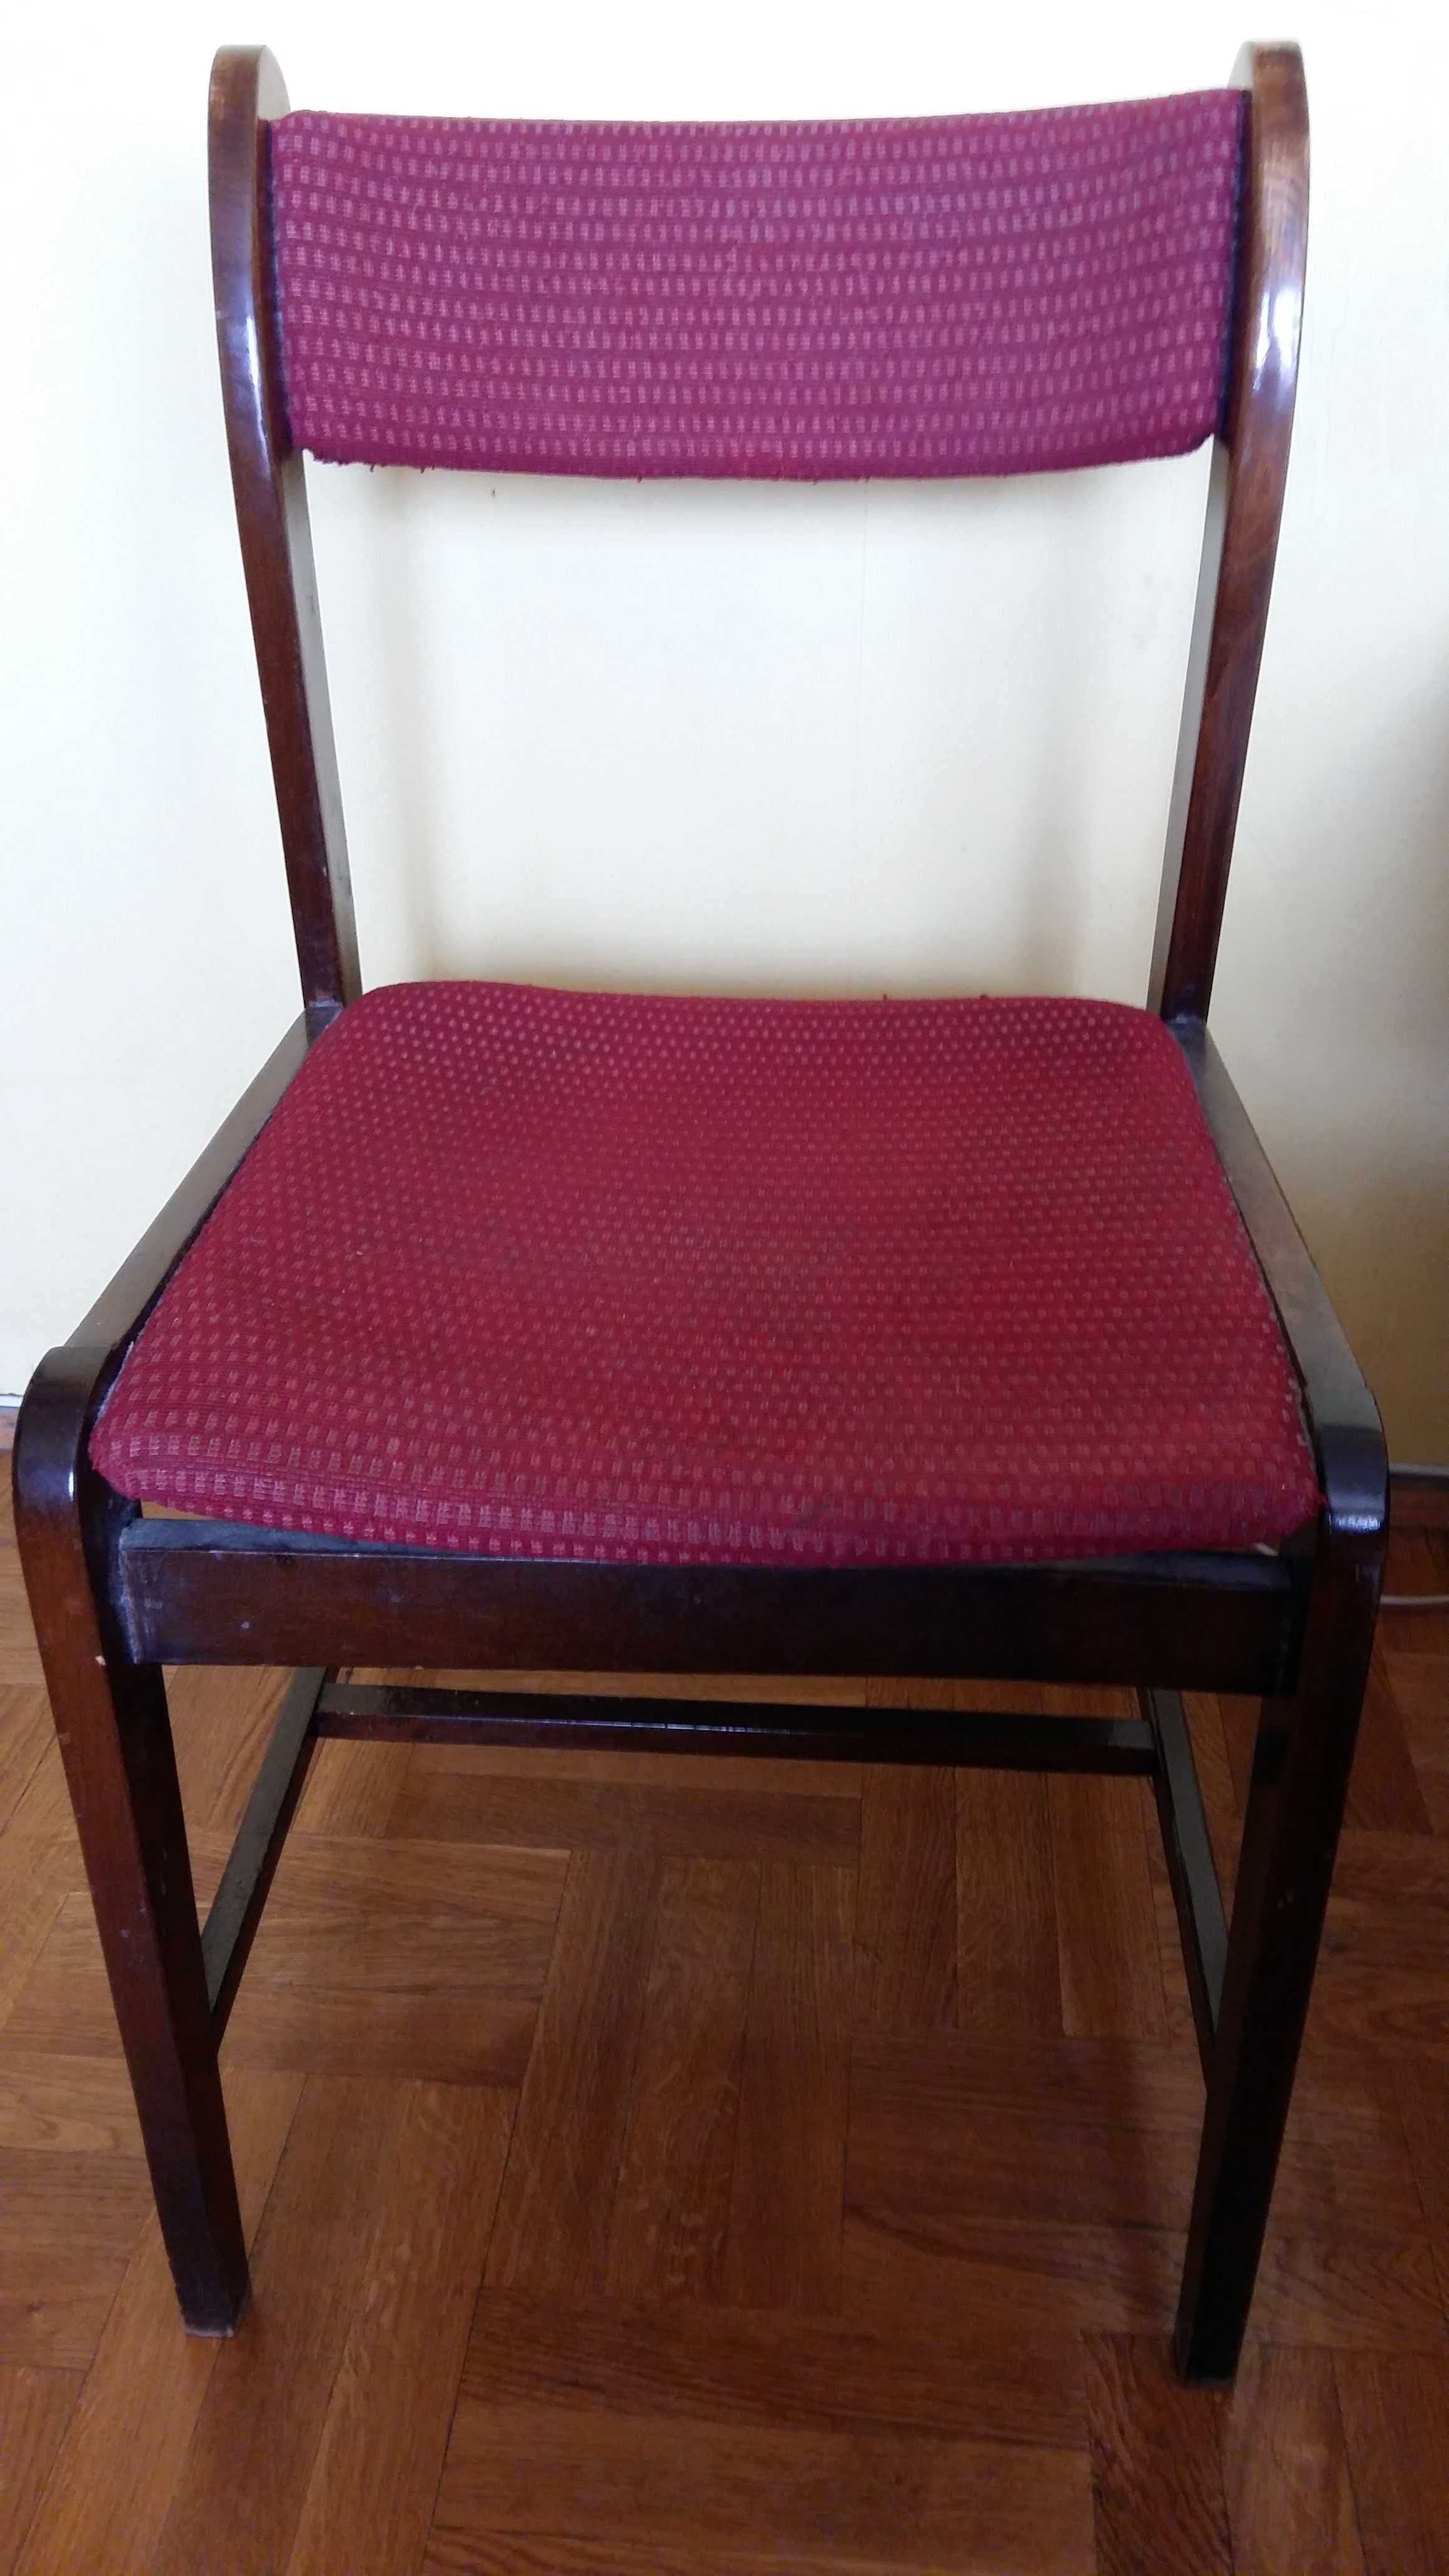 Krzesło drewniane tapicerowane,bordowe.